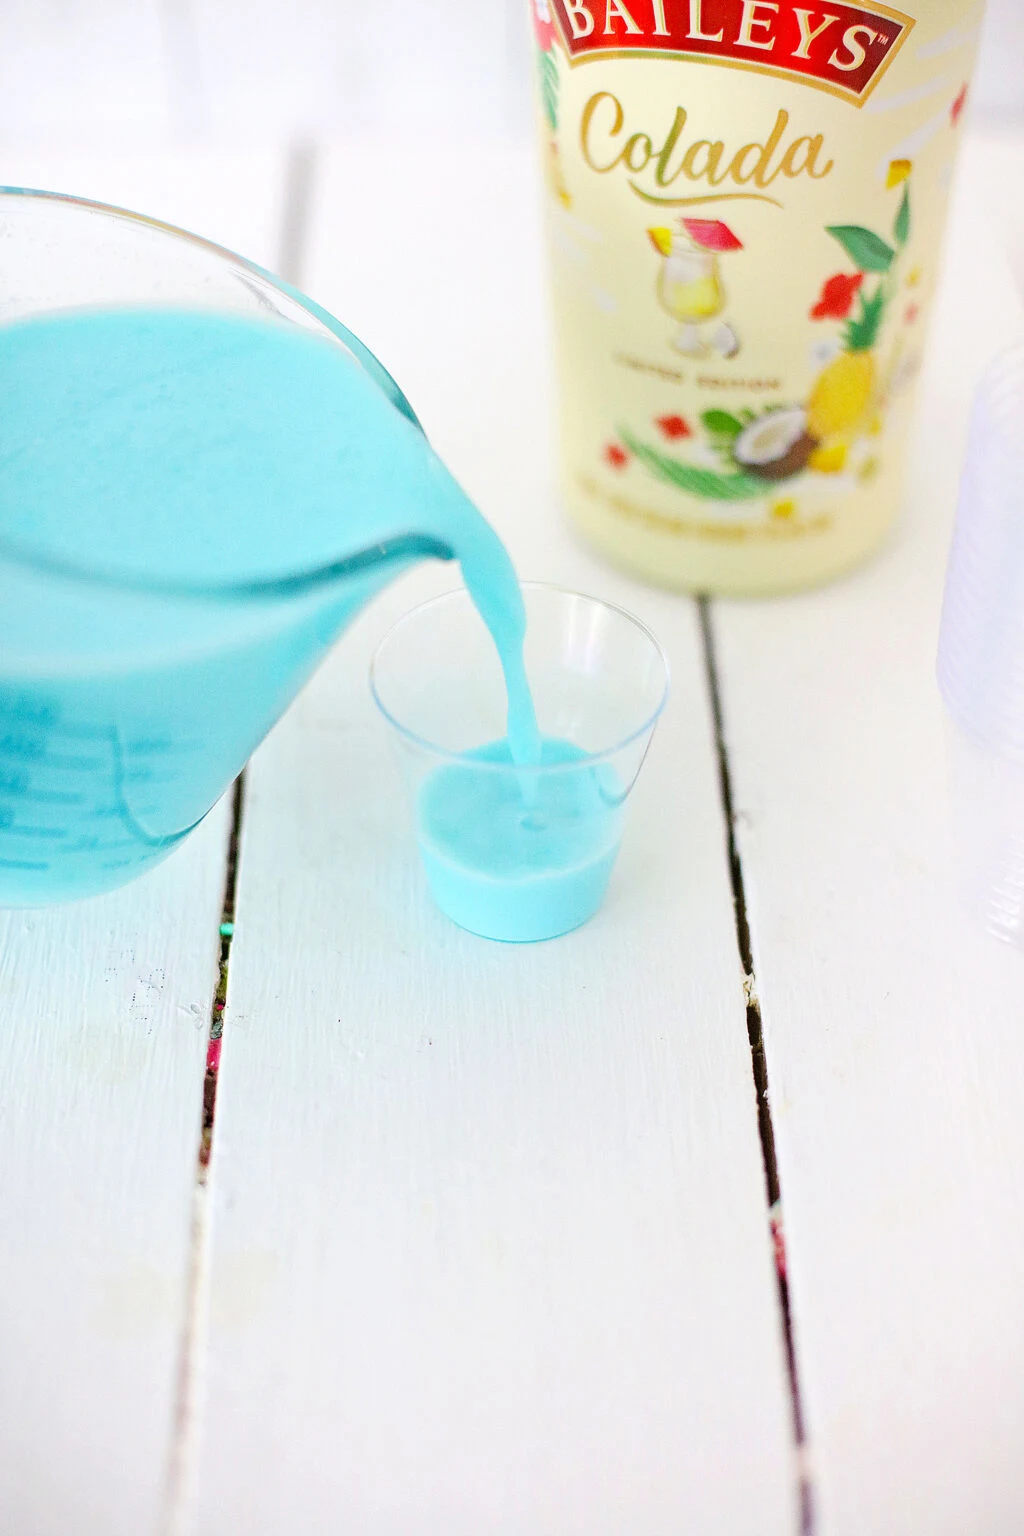 aqua jello shot mixture being poured into small plastic jello shot cup